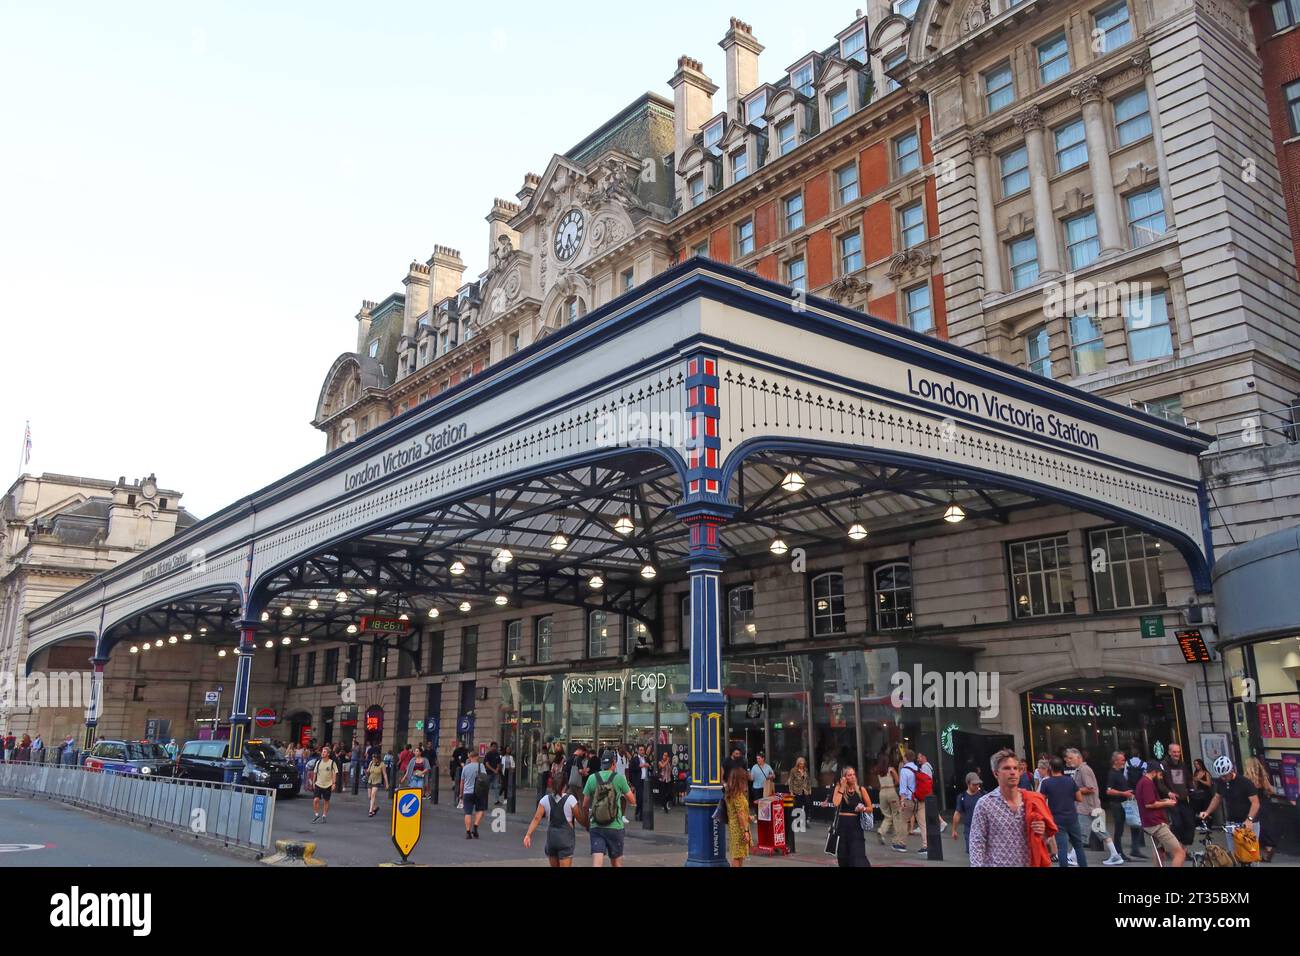 Entrée de la gare Victoria de Londres, Victoria St, Londres, Angleterre, Royaume-Uni, SW1E 5ND Banque D'Images